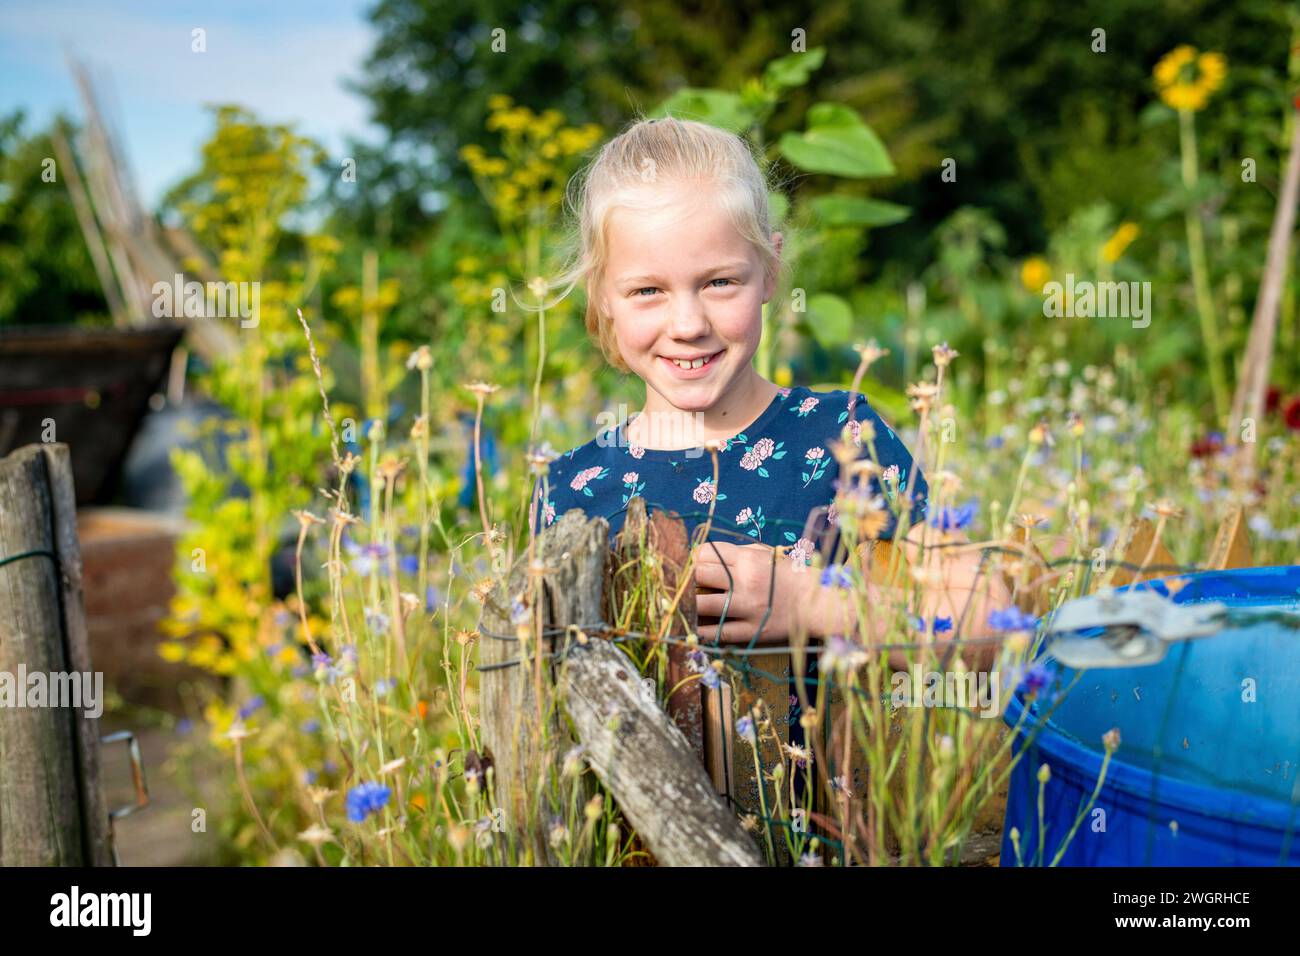 Porträt eines jungen Mädchens, das in ihrem Kleingarten steht, umgeben von blühenden Wildblumen im Sommer. Stockfoto